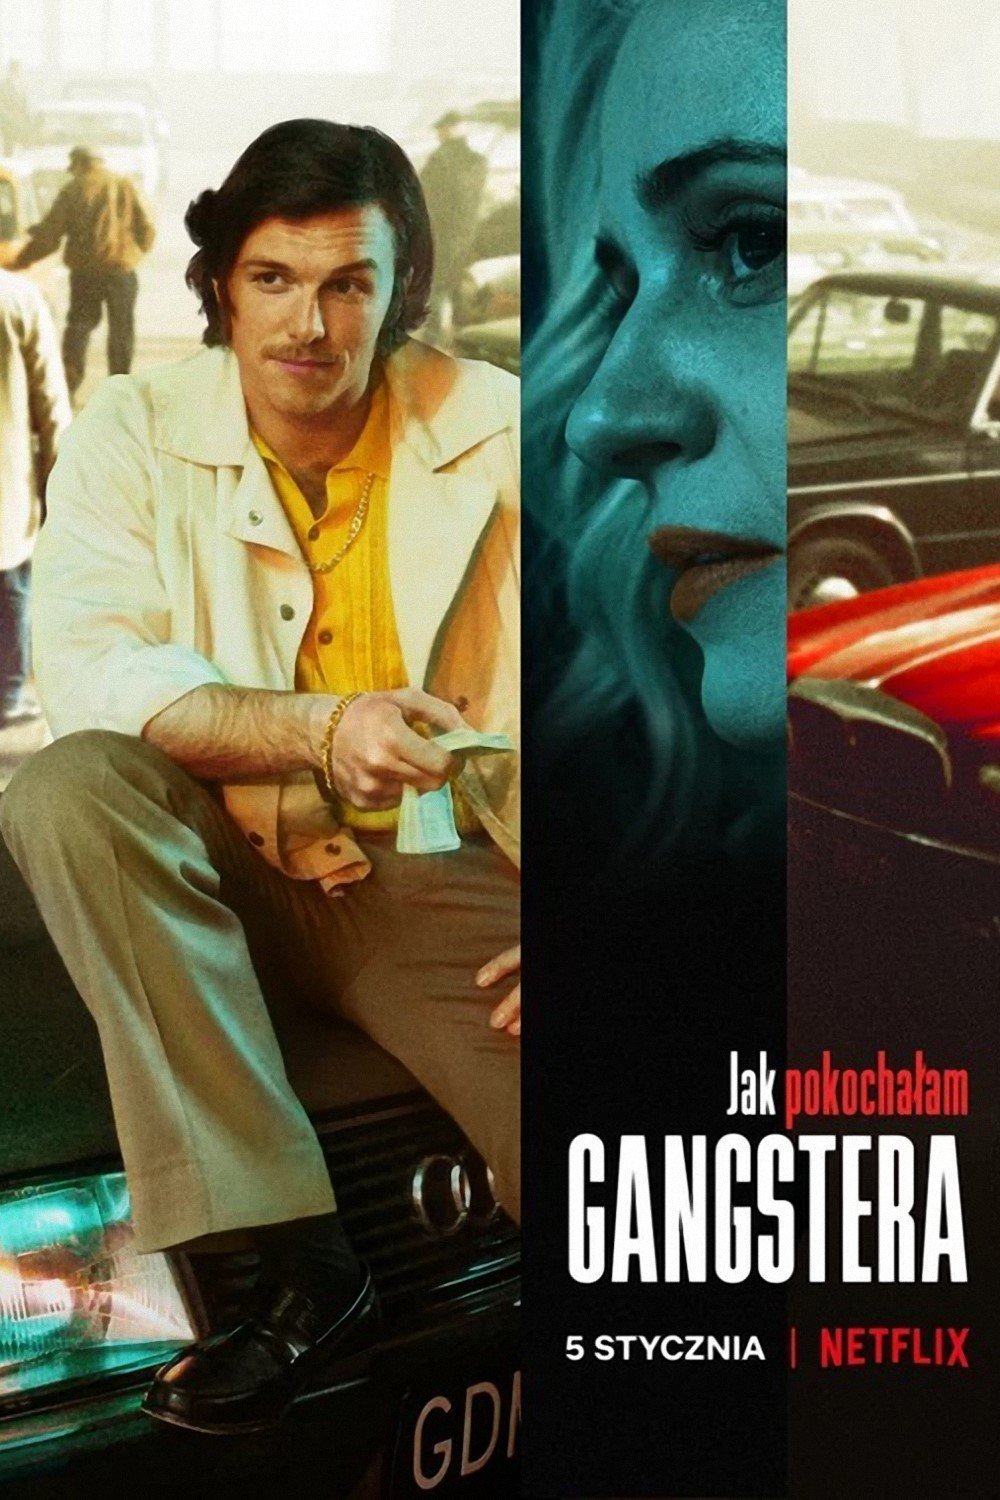 L'affiche originale du film Jak pokochalam gangstera en polonais